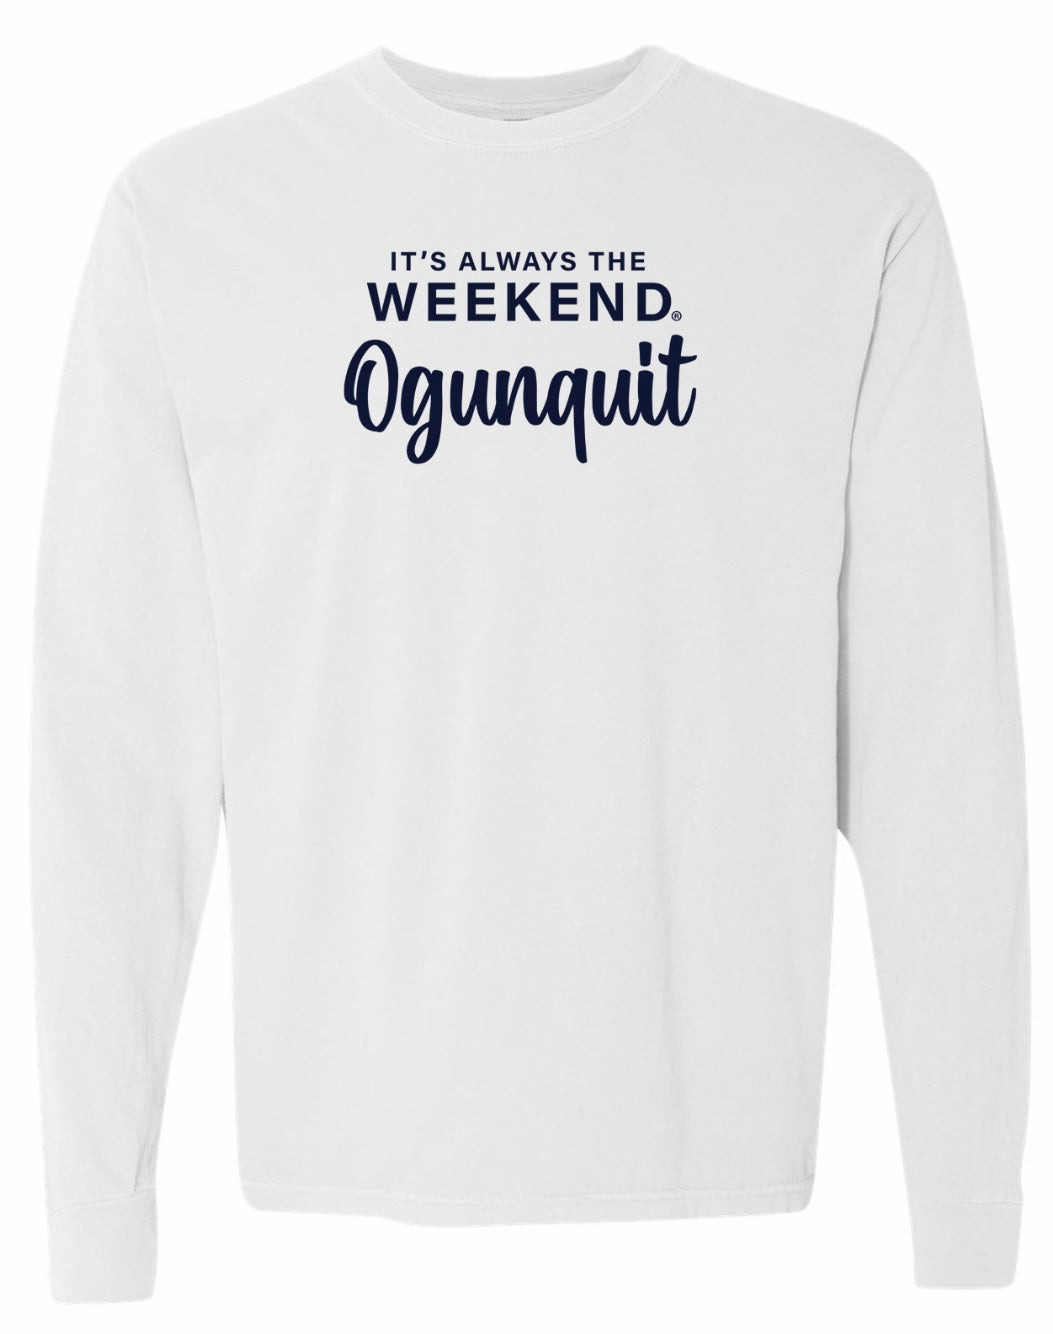 Ogunquit